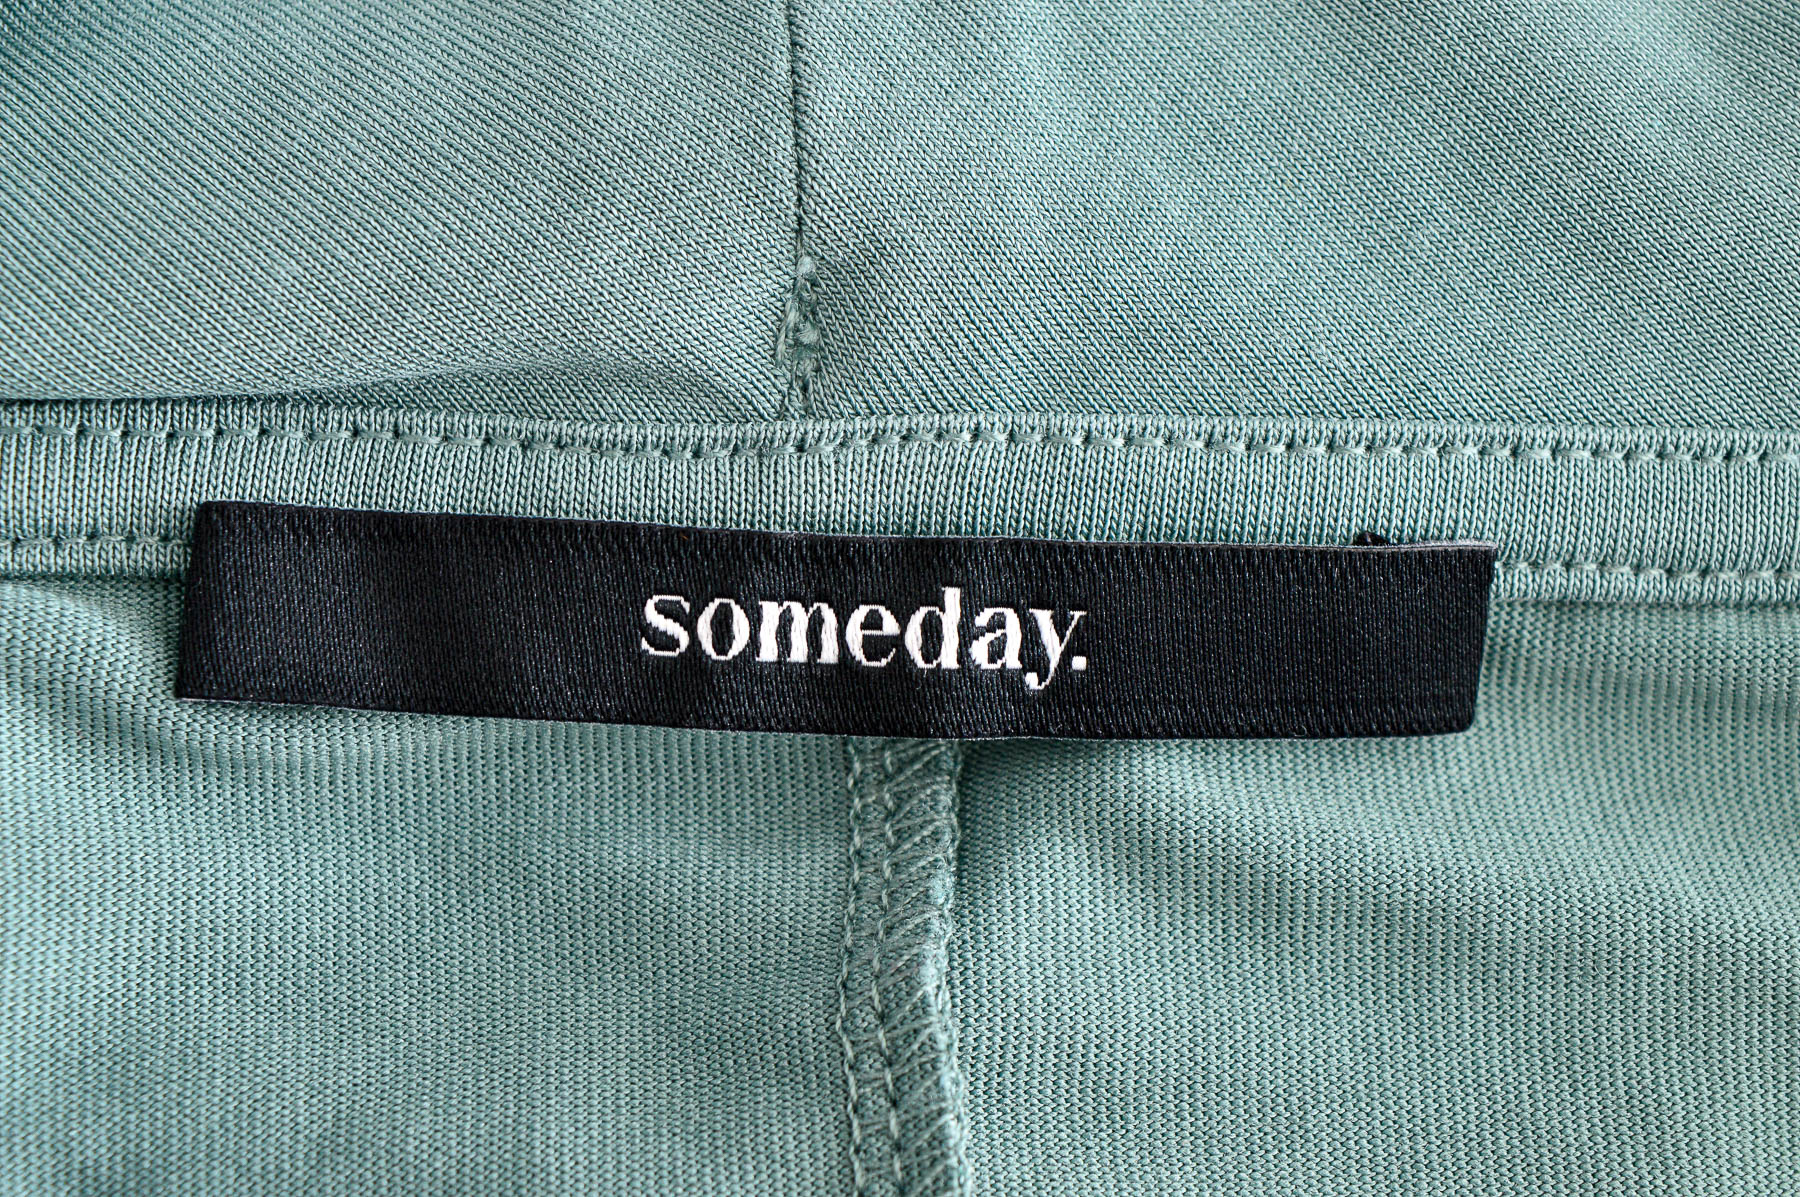 Women's blouse - Someday. - 2